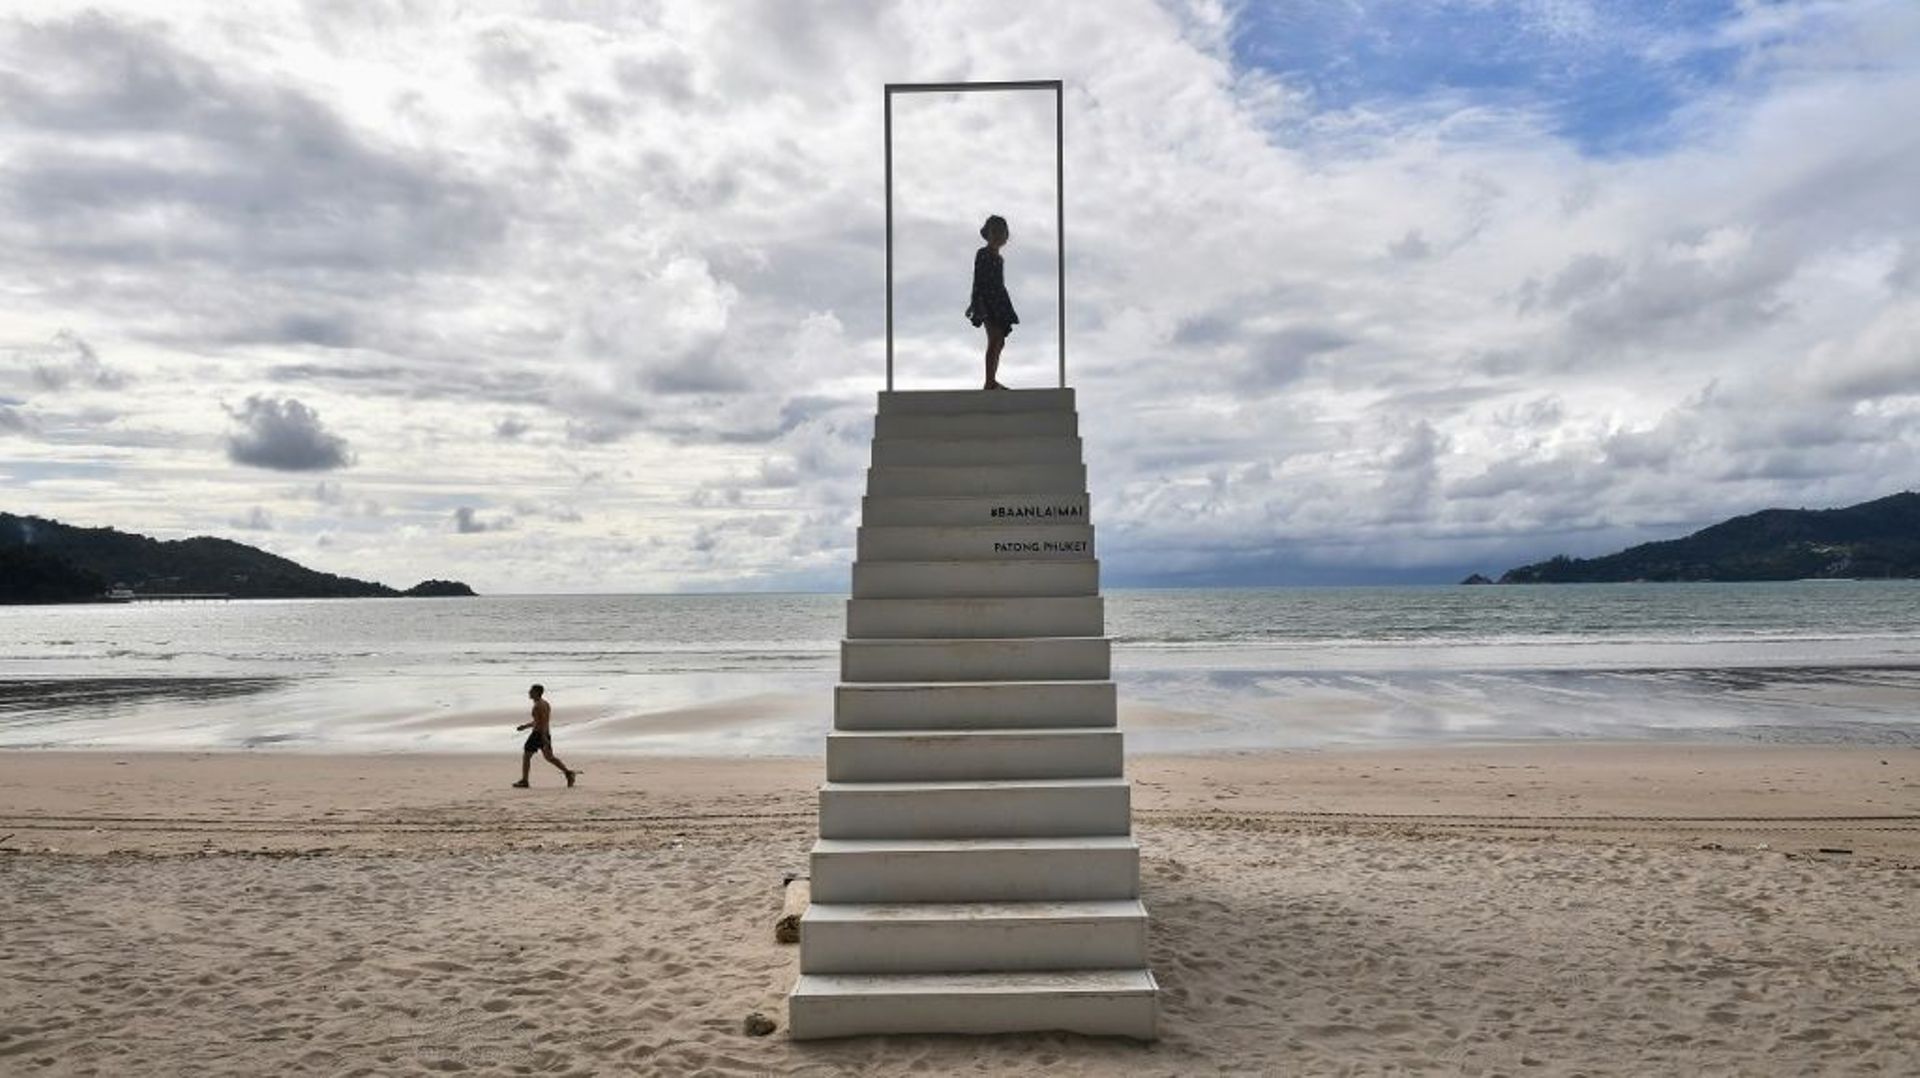 Des enfants jouent sur la plage presque vide de Patong, sur l'île de Phuket, en Thaïlande, le 1er octobre 2020